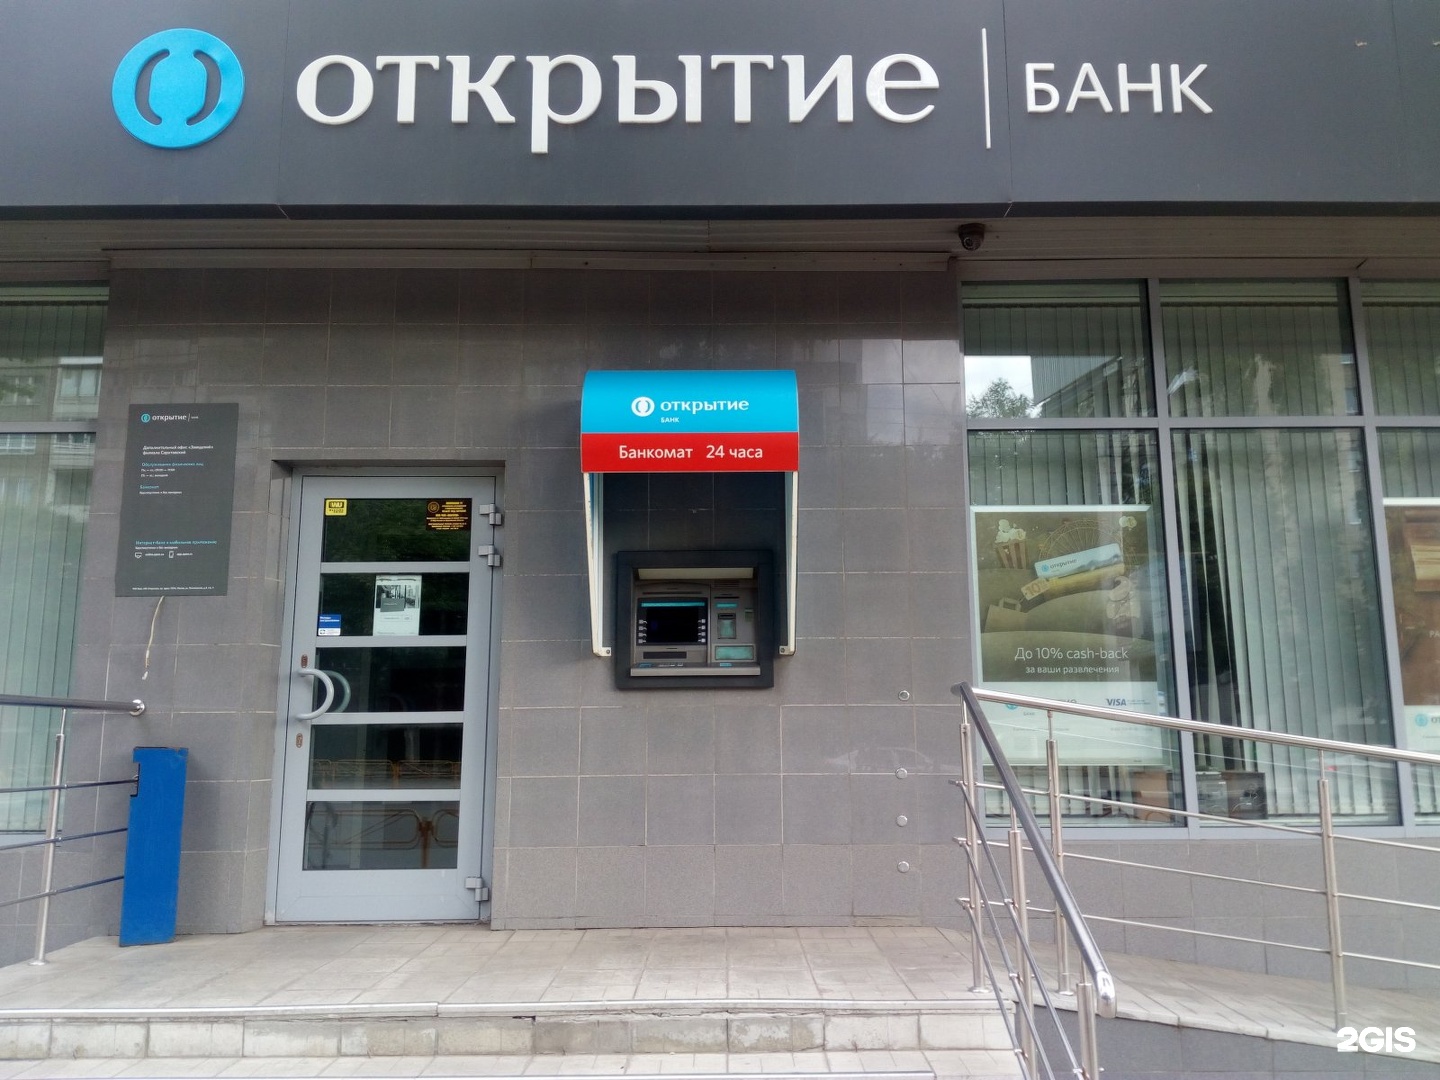 Банк открытие название